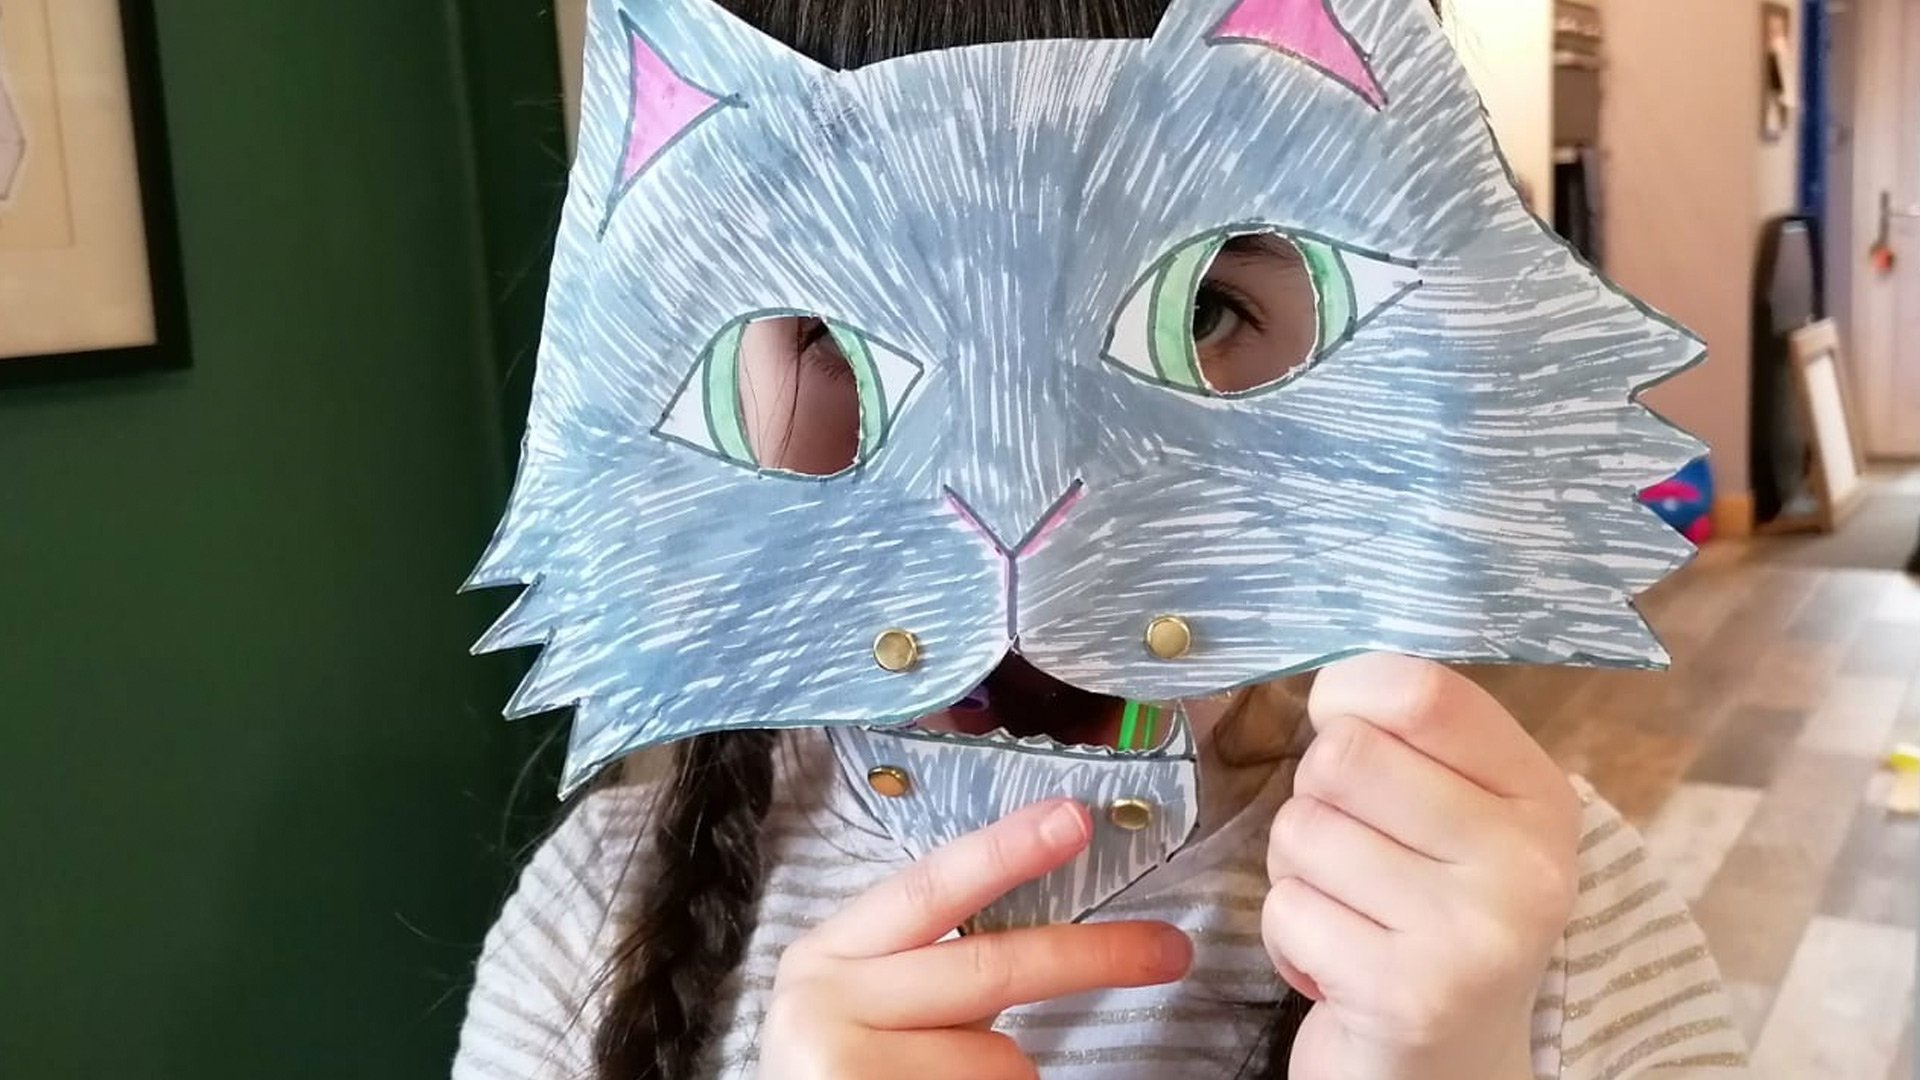 Hoglets craft: Make a singing cat mask — Hoglets Theatre